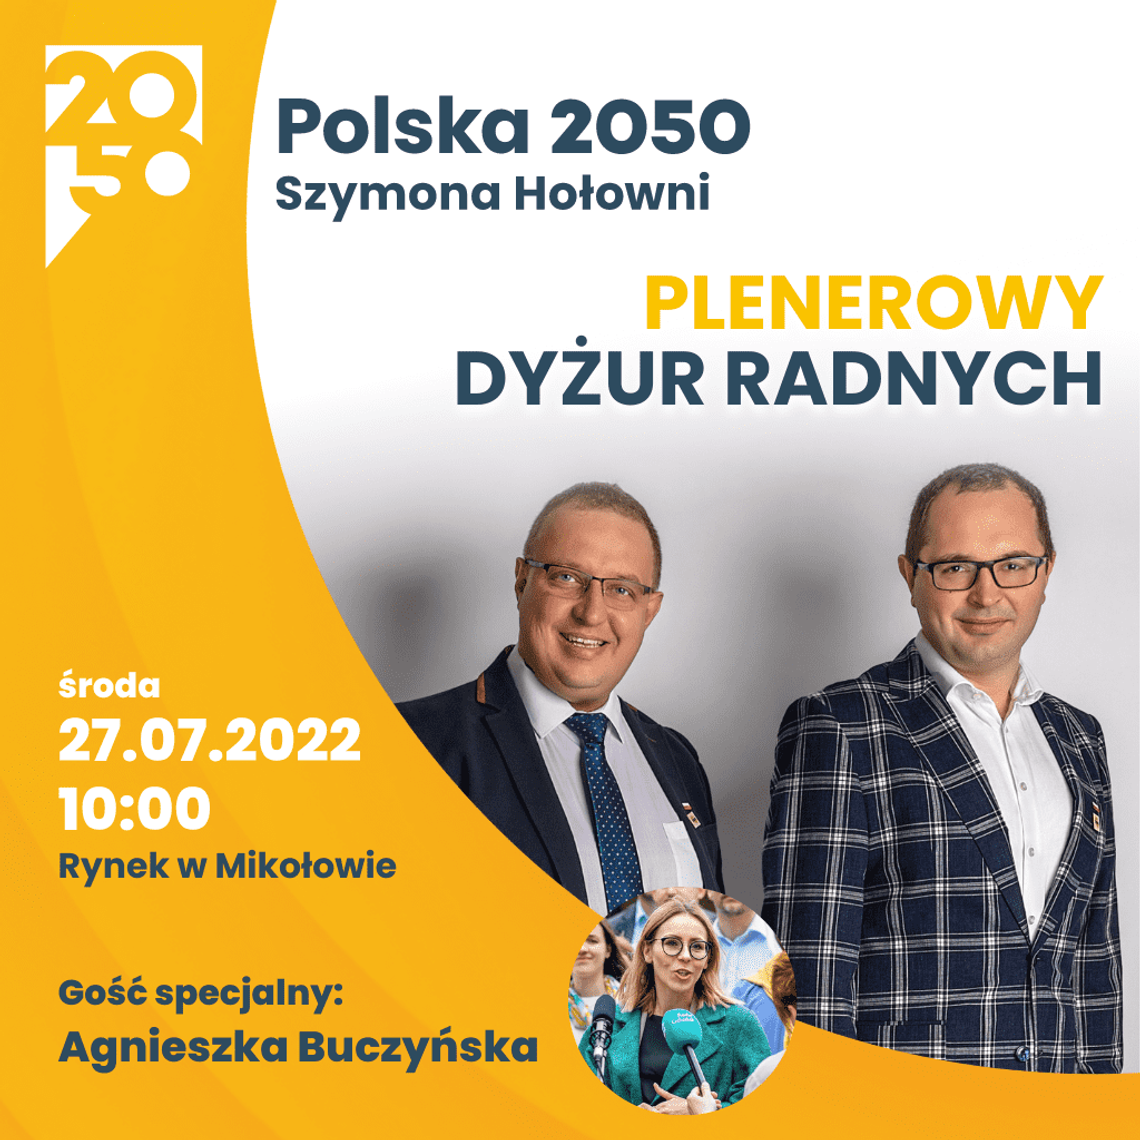 Polska 2050 zaprasza na plenerowy dyżur radnych